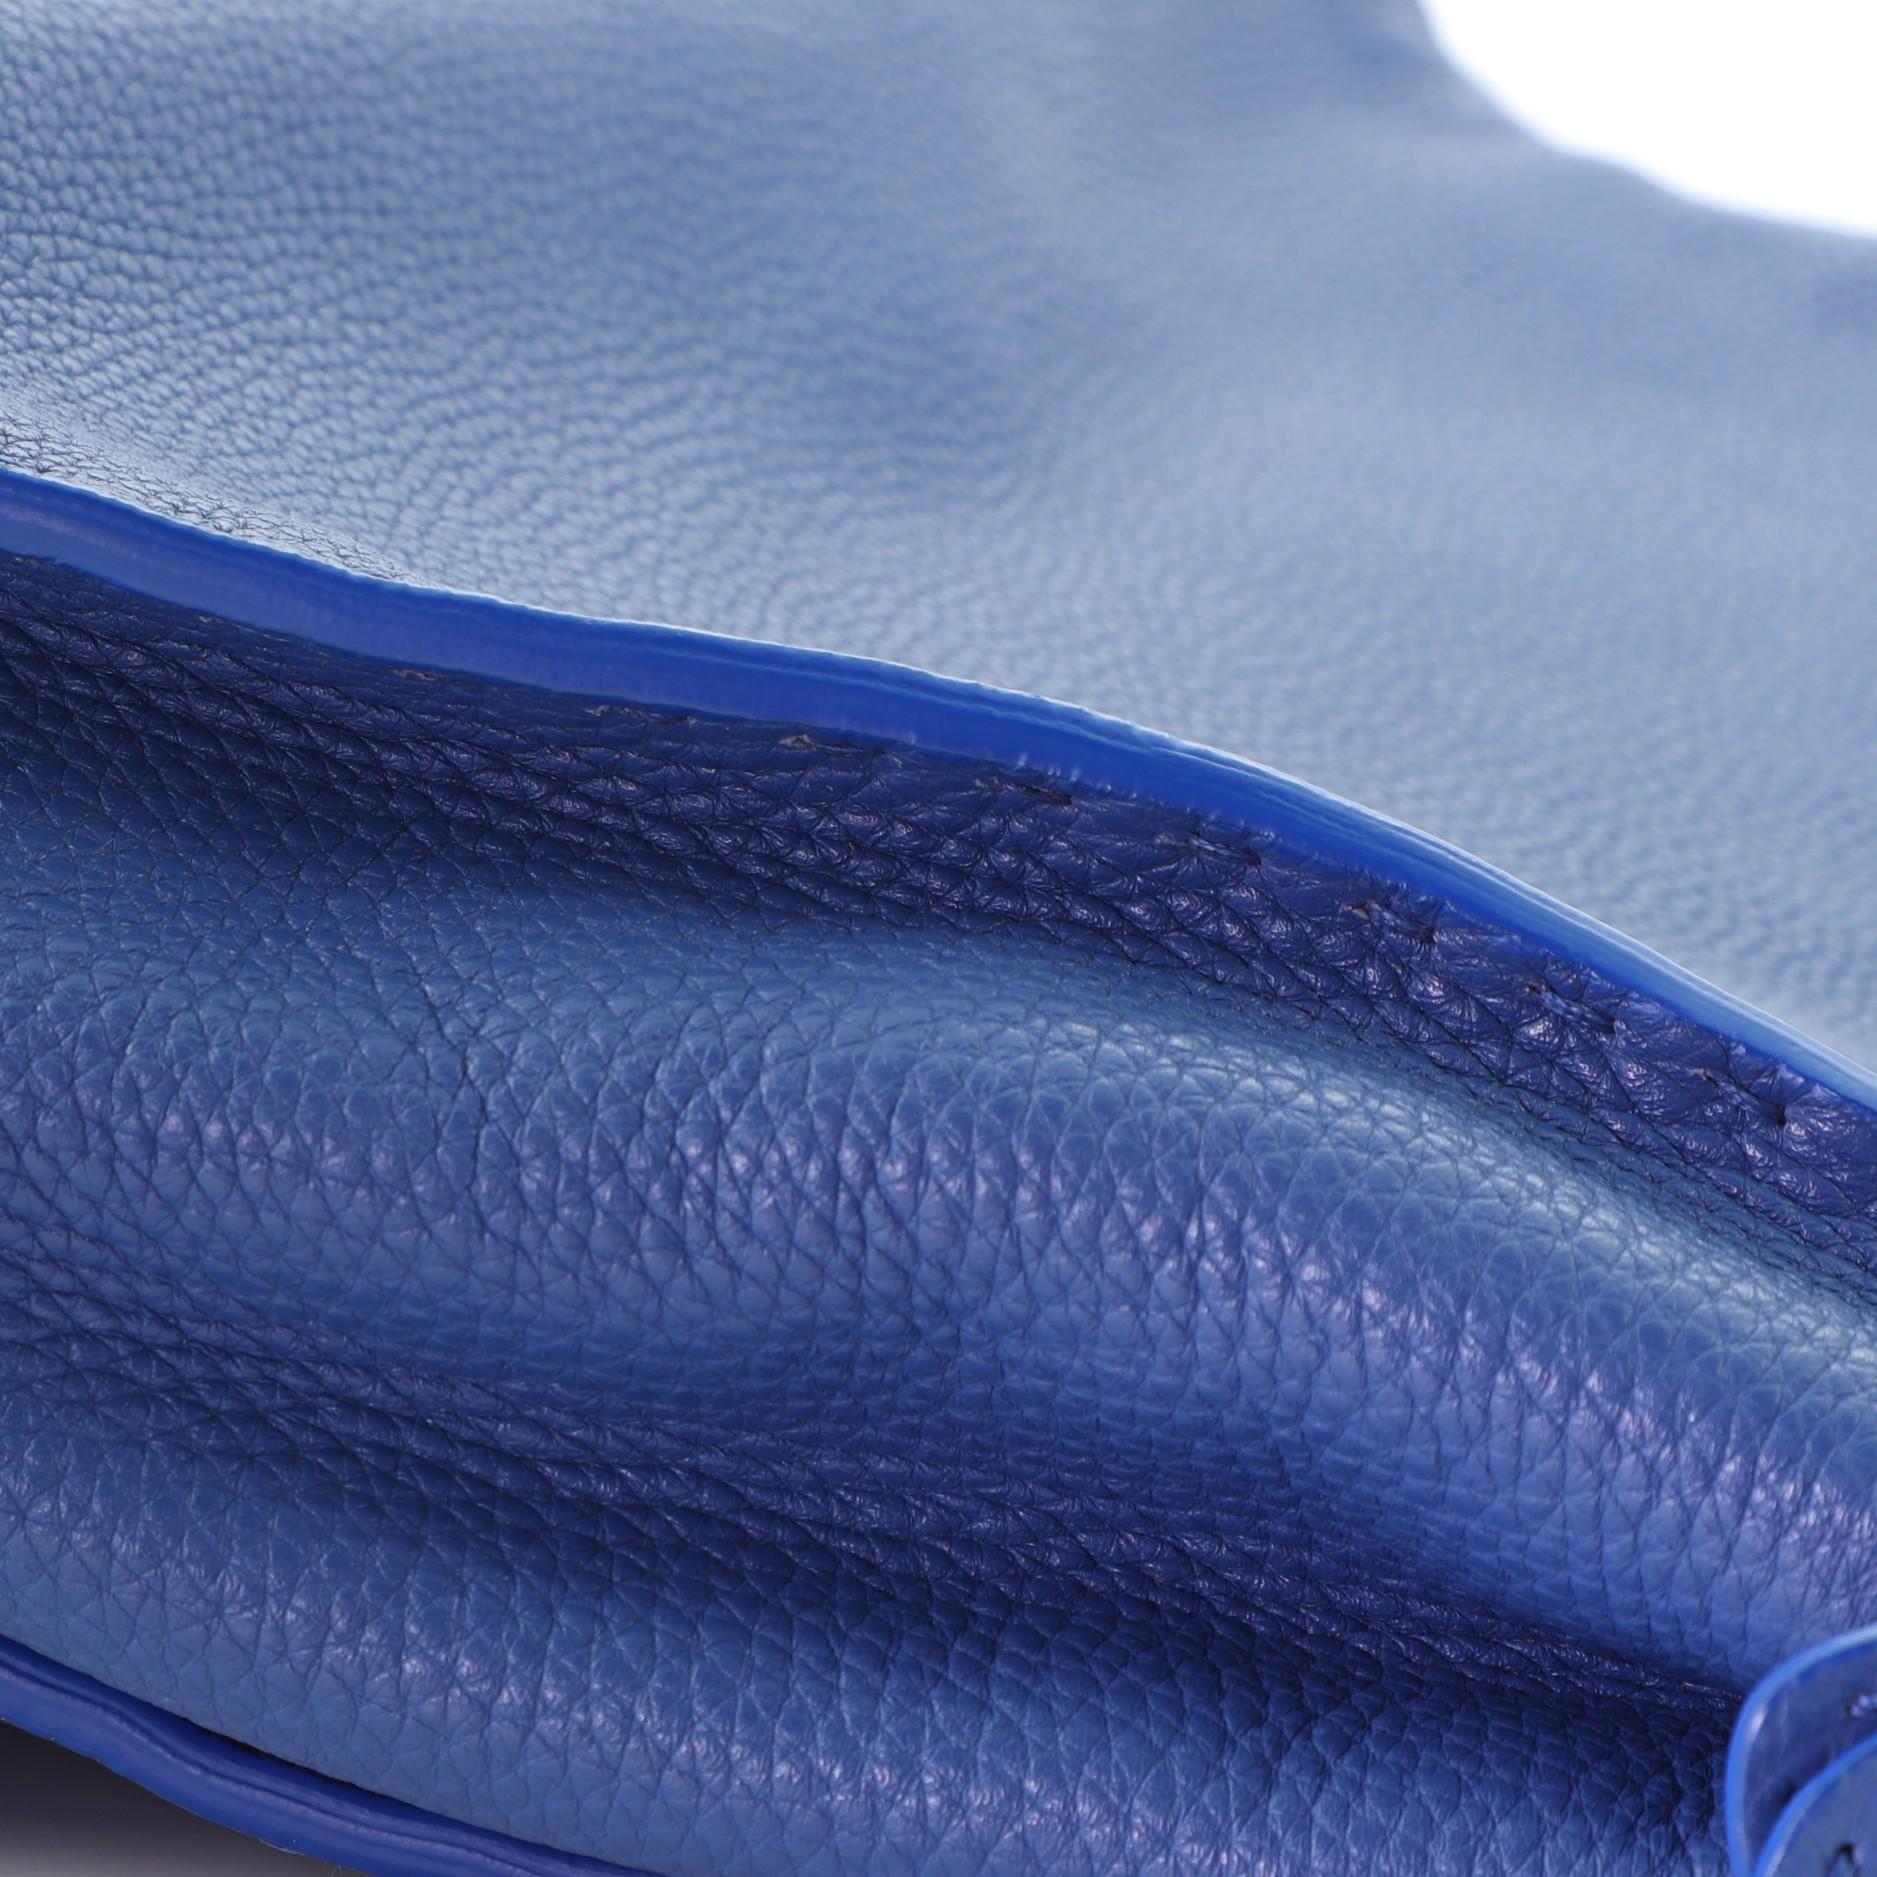 Fendi Selleria Peekaboo Bag Rigid Leather Regular 3